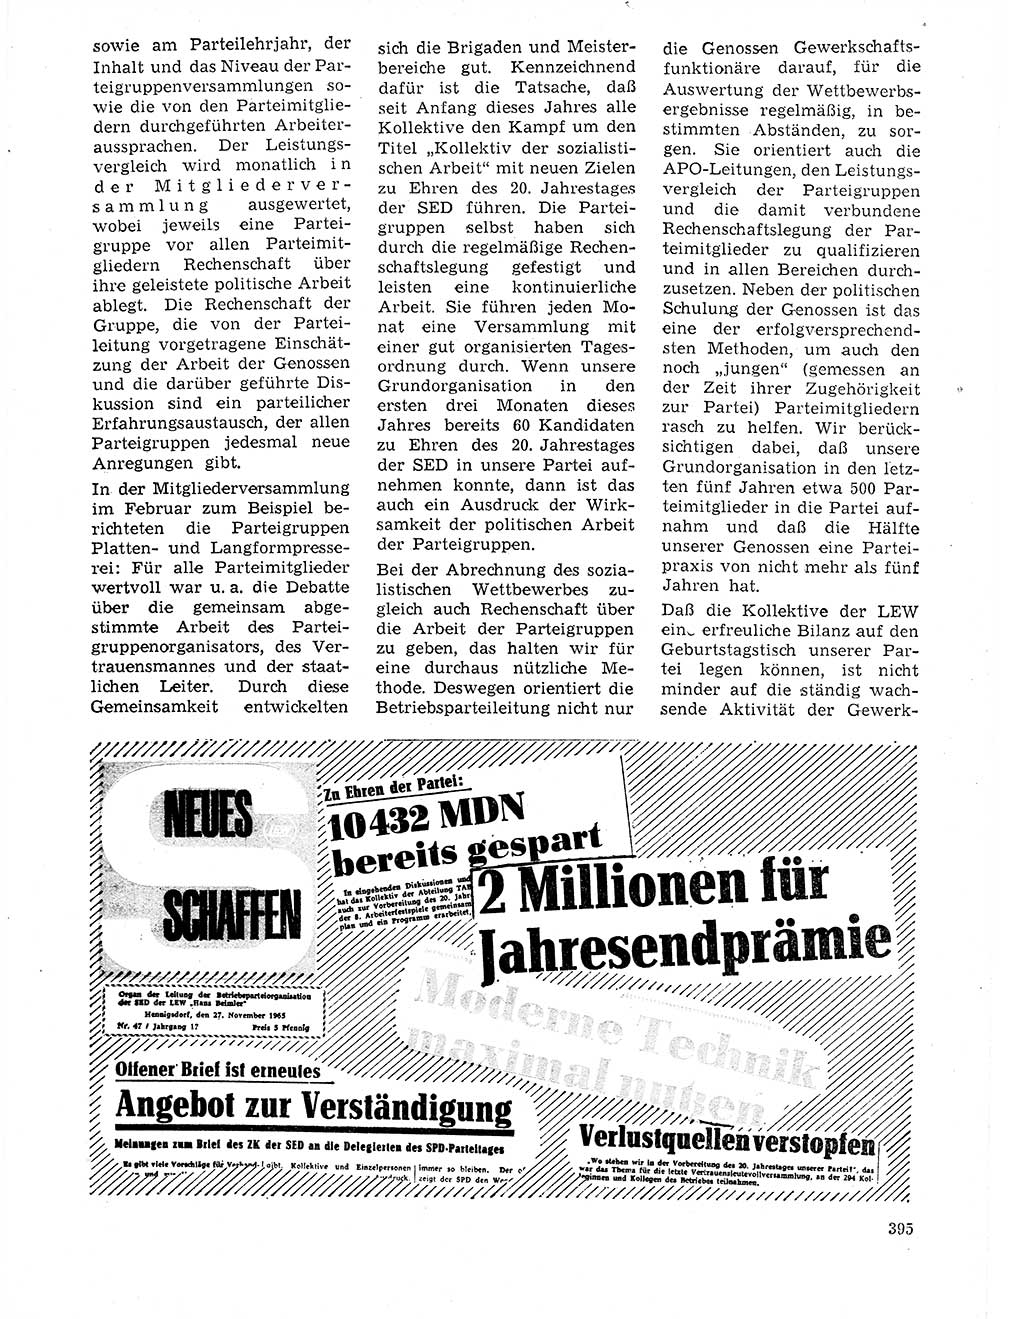 Neuer Weg (NW), Organ des Zentralkomitees (ZK) der SED (Sozialistische Einheitspartei Deutschlands) für Fragen des Parteilebens, 21. Jahrgang [Deutsche Demokratische Republik (DDR)] 1966, Seite 395 (NW ZK SED DDR 1966, S. 395)